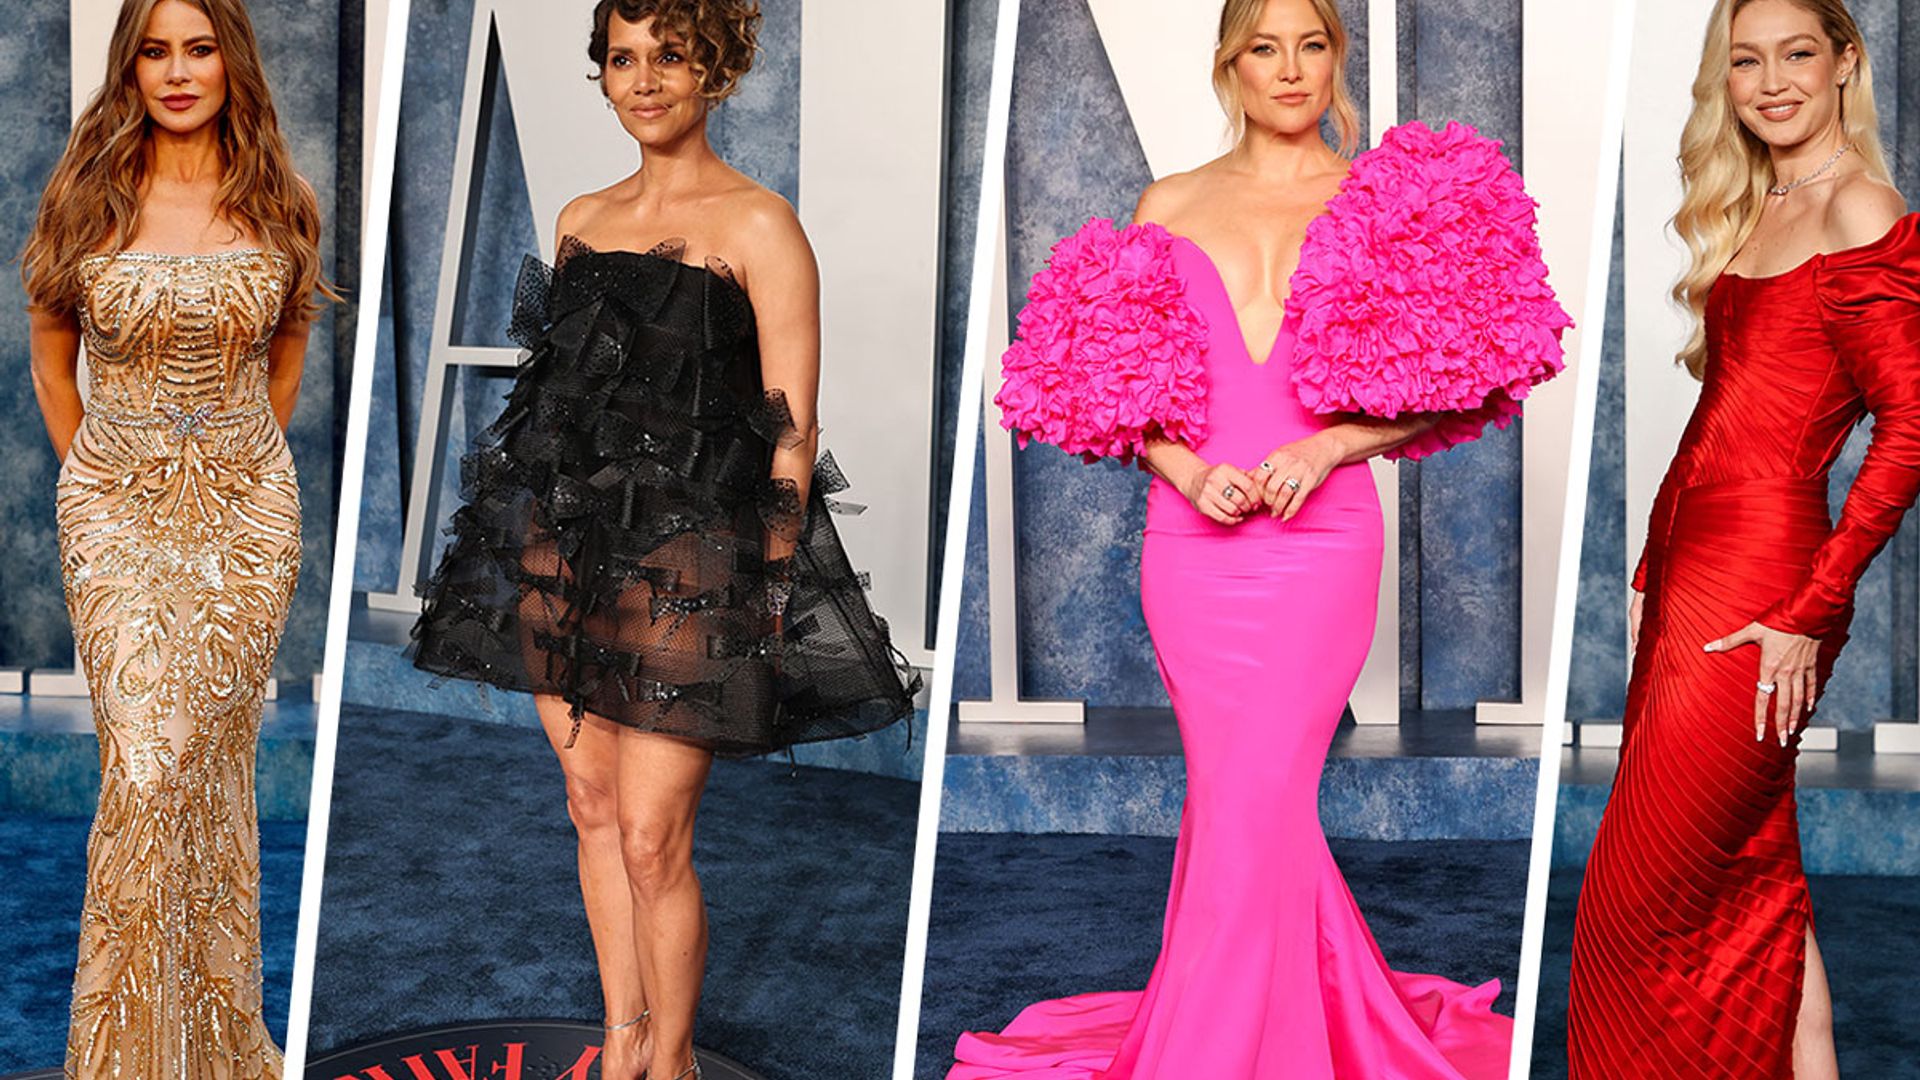 Ashley Graham Brings Sheer Glamour in Cutout Dress at Oscars 2023